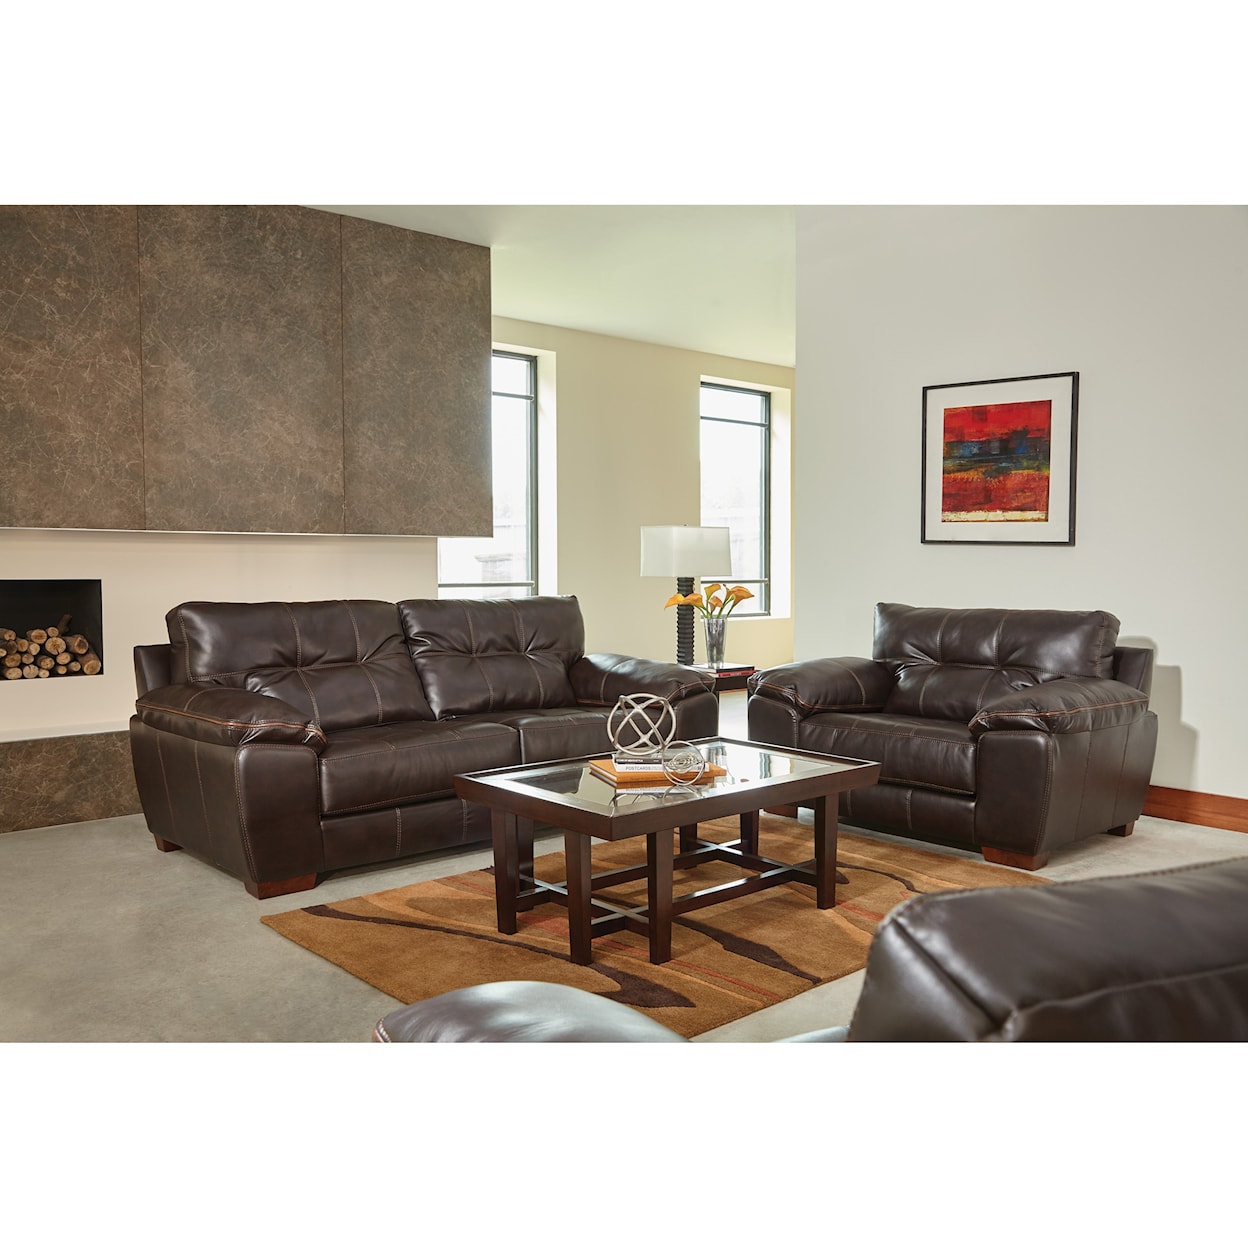 Jackson Furniture 4396 Hudson Living Room Group